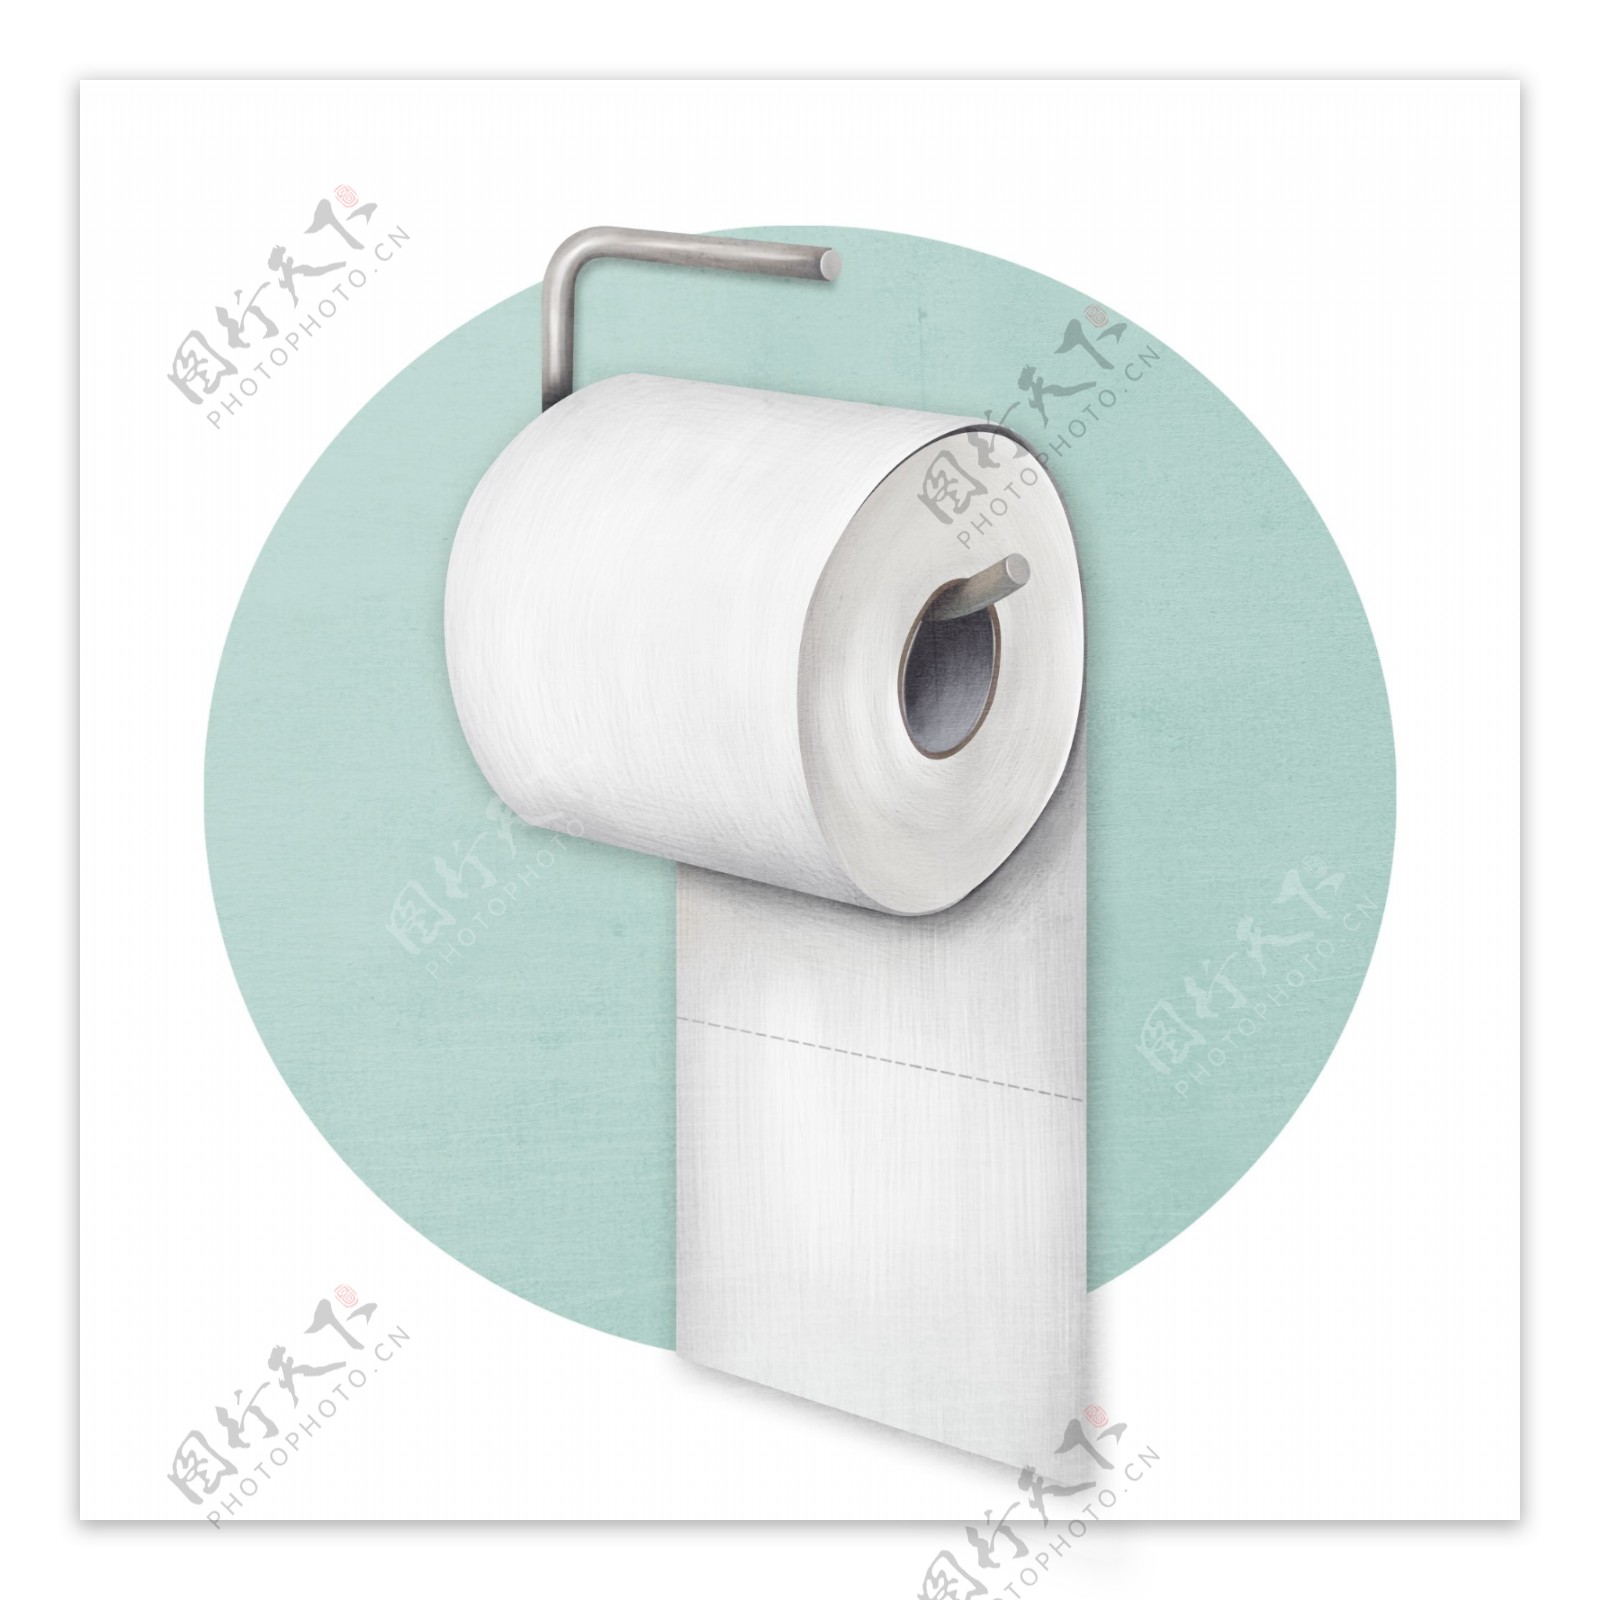 世界厕所日手绘风格卷纸